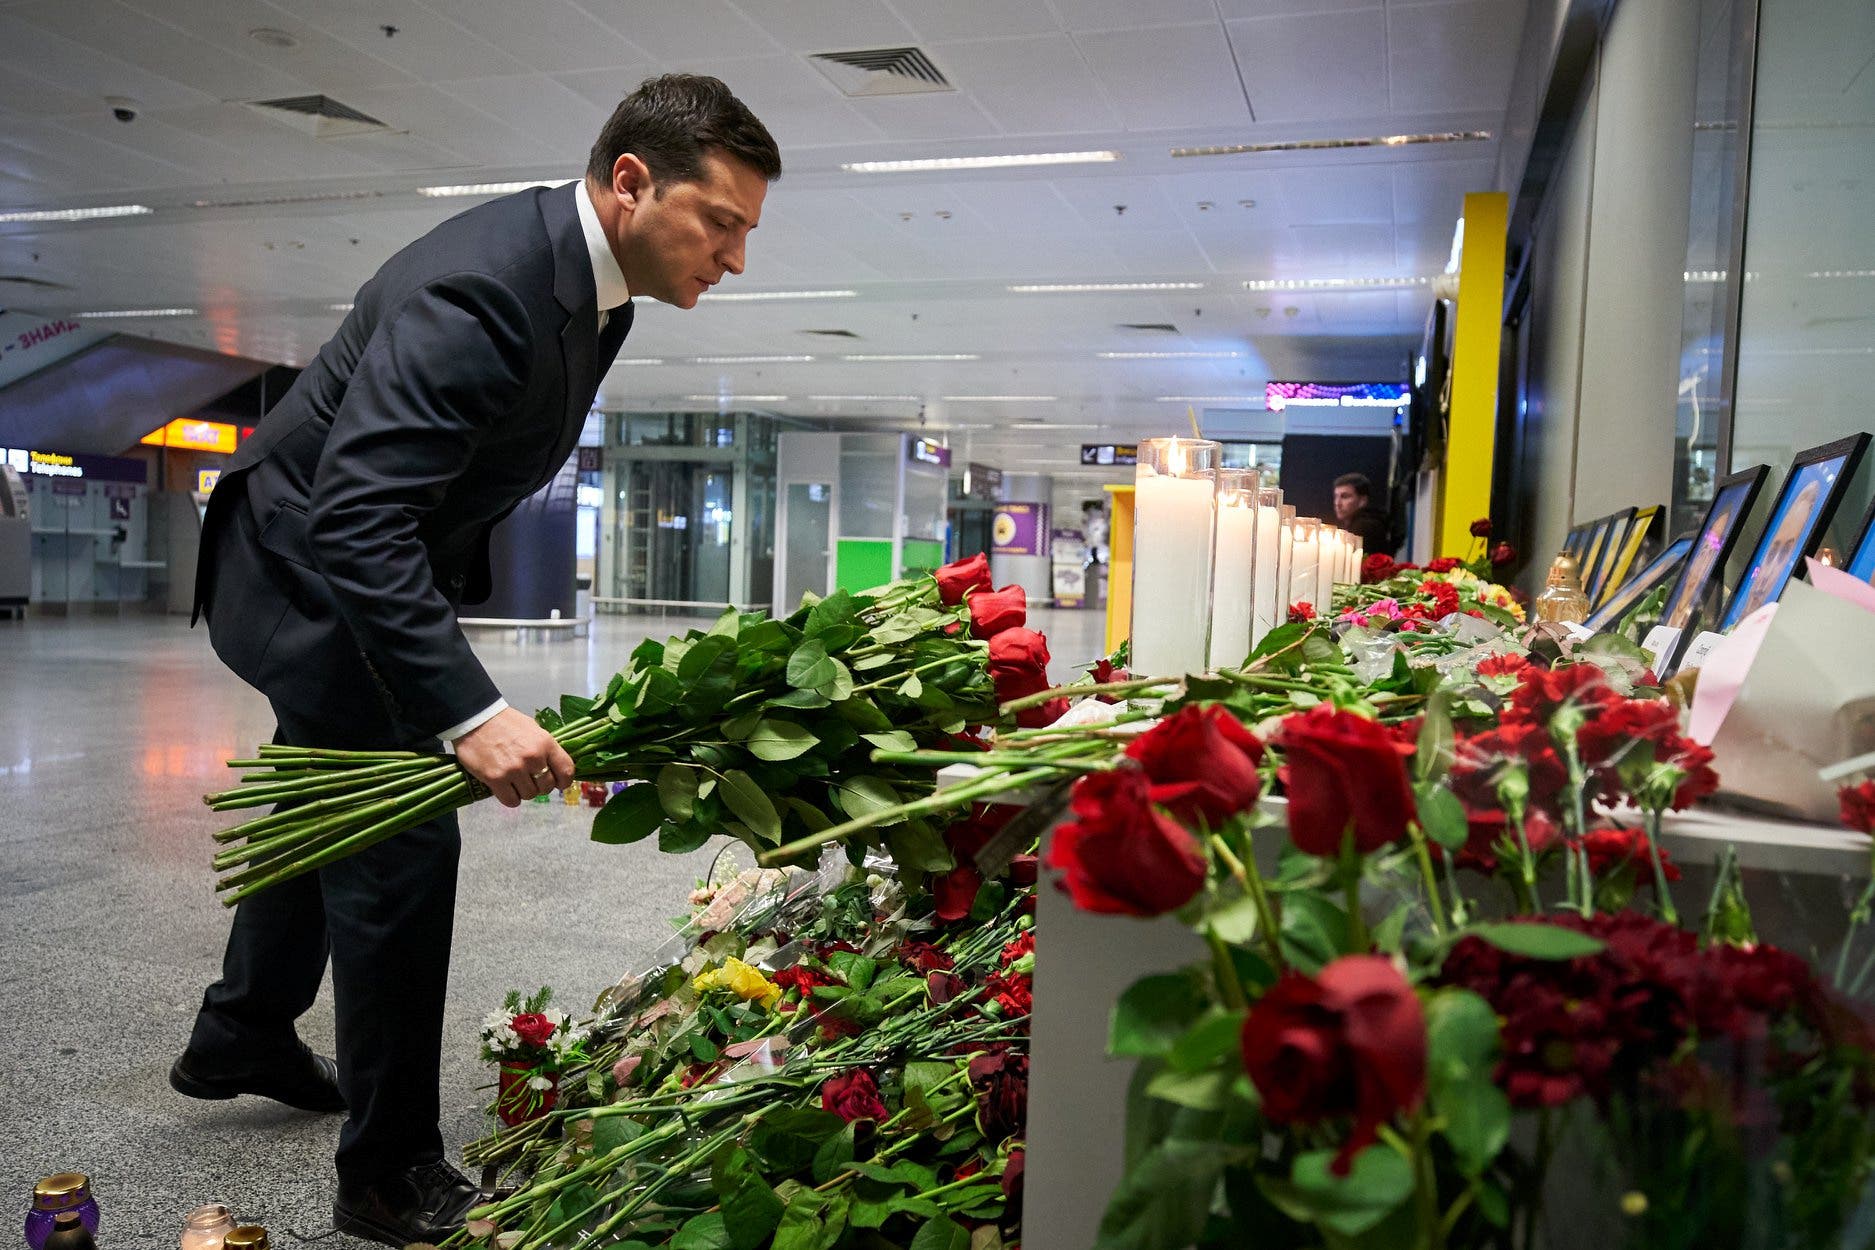 زيلينسكي يضع الورود أمام النصب التذكاري في مطار كييف